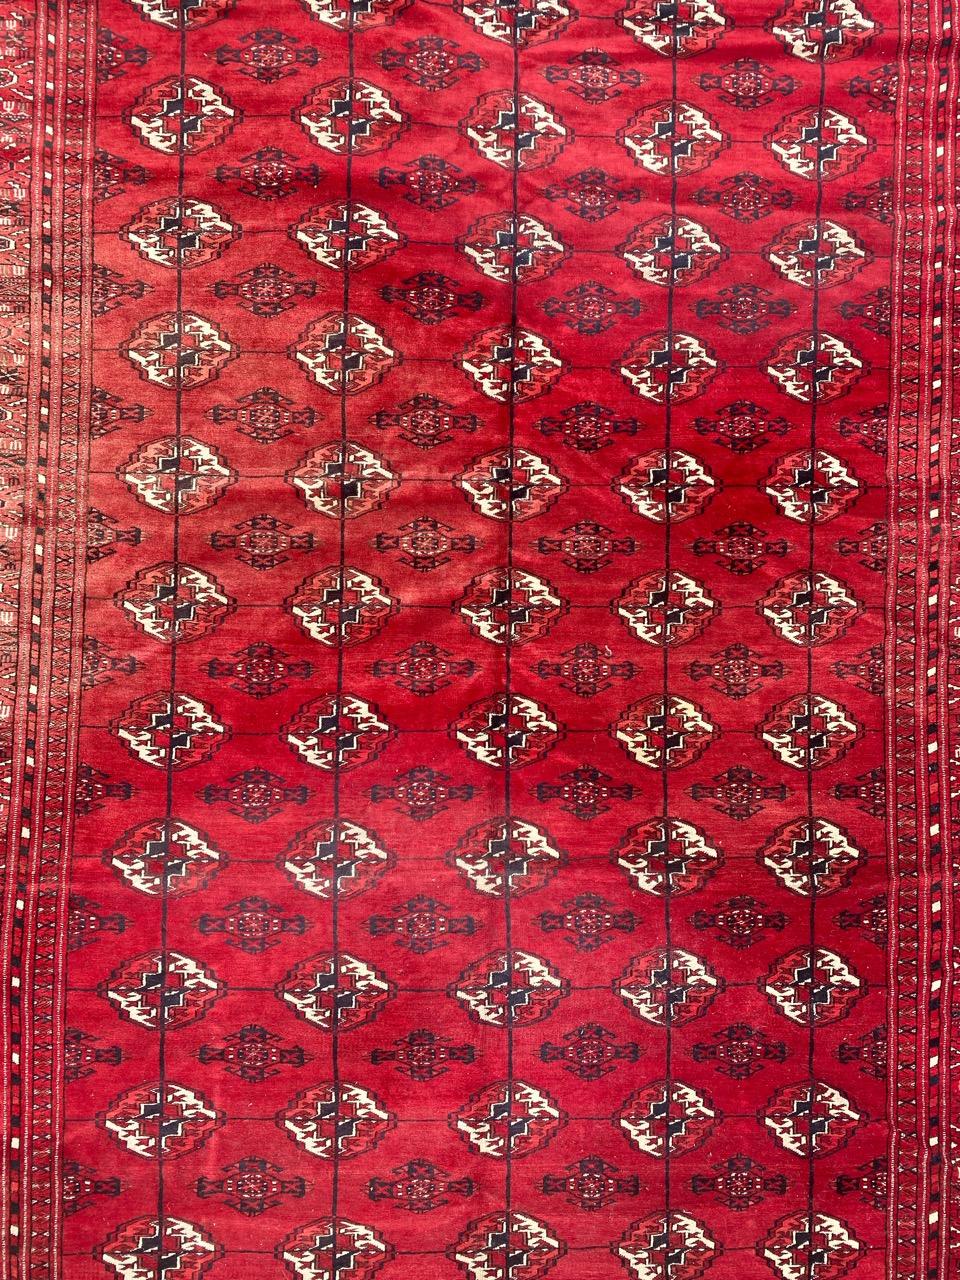 Schöner Bokhara Afghan Teppich mit geometrischem Muster und schönen Farben, komplett handgeknüpft mit Wollsamt auf Wollfond.

✨✨✨
